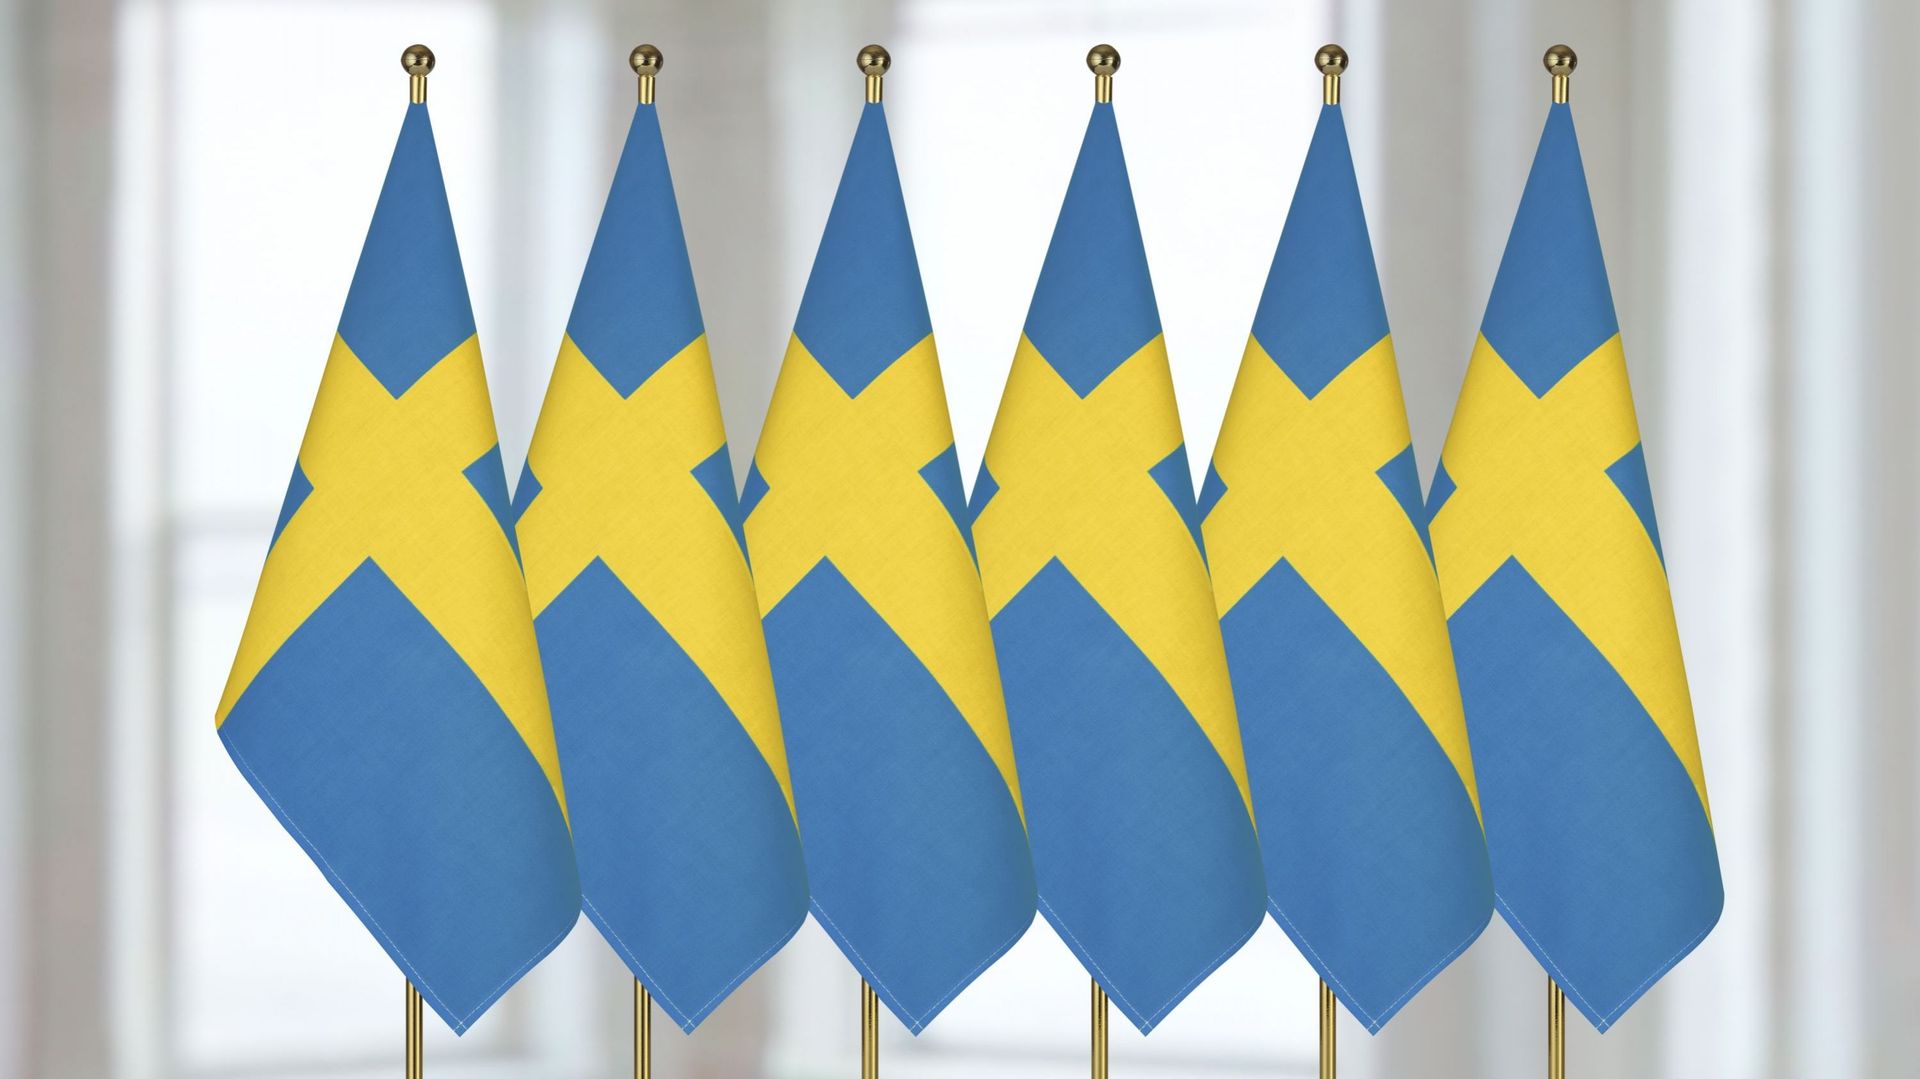 Après deux siècles de neutralité, la Suède est officiellement membre de l’Otan, le drapeau bleu et jaune hissé ce jeudi devant le siège bruxellois